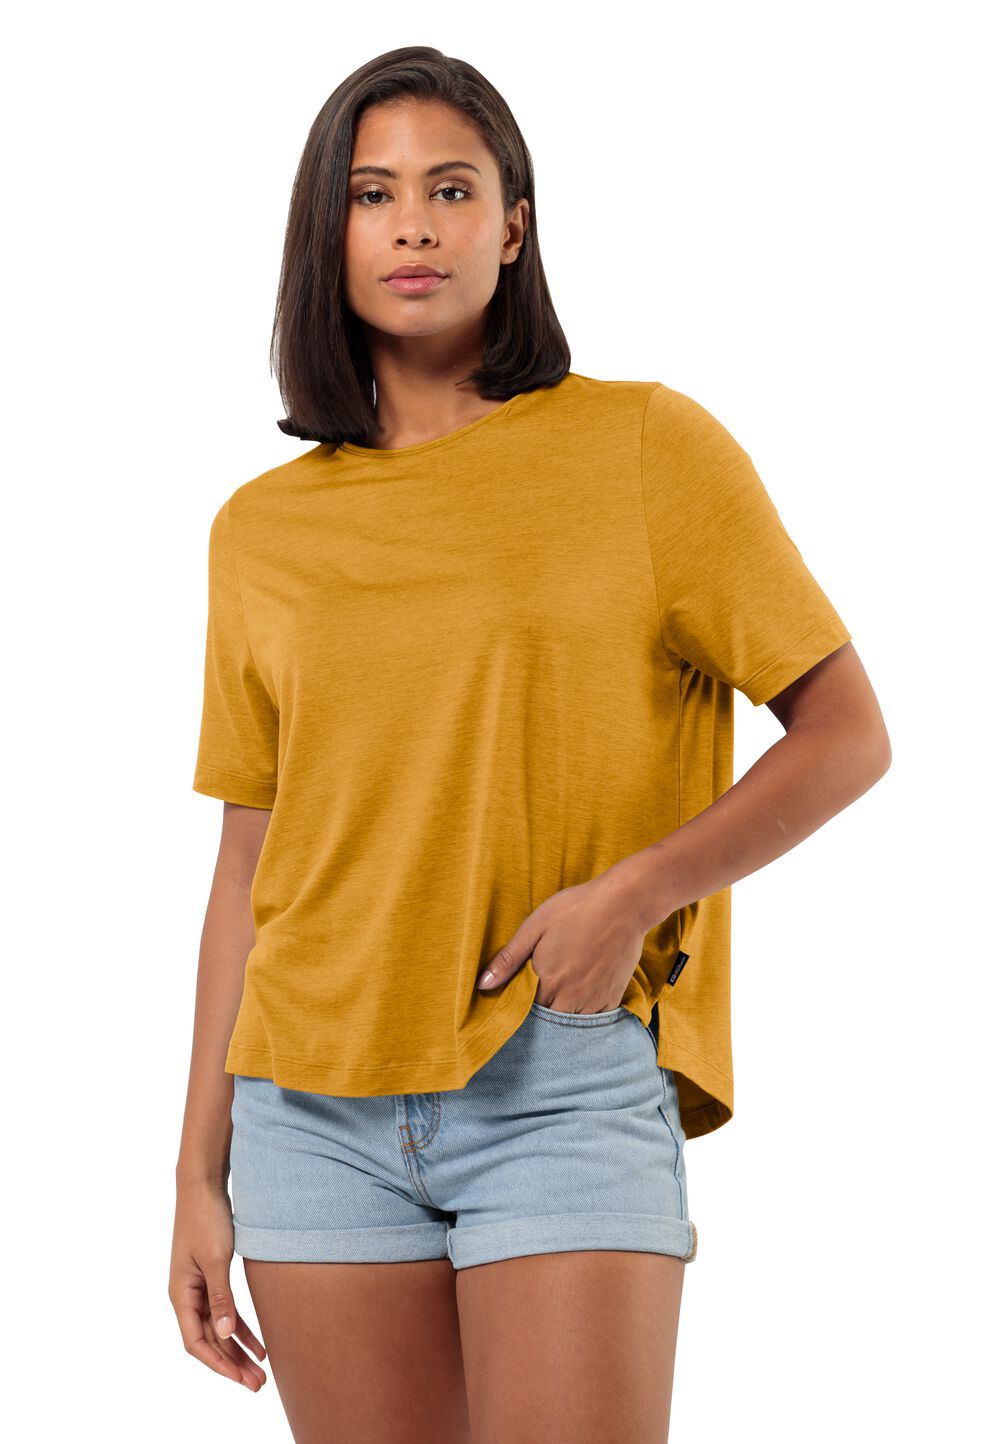 Jack Wolfskin Travel T-Shirt Women Functioneel shirt Dames L bruin curry